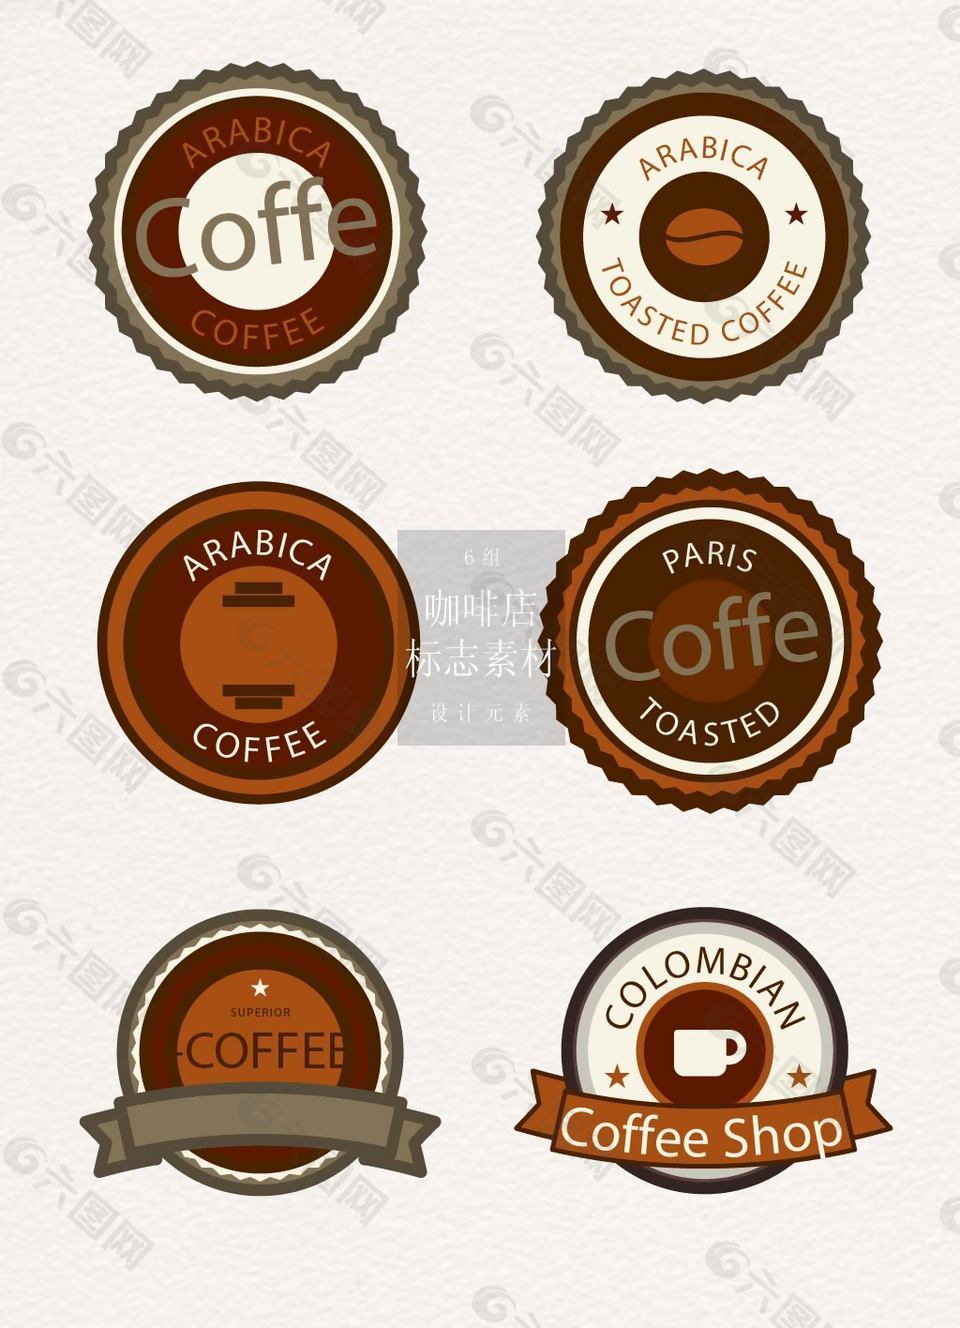 经典徽章样式咖啡店标志素材